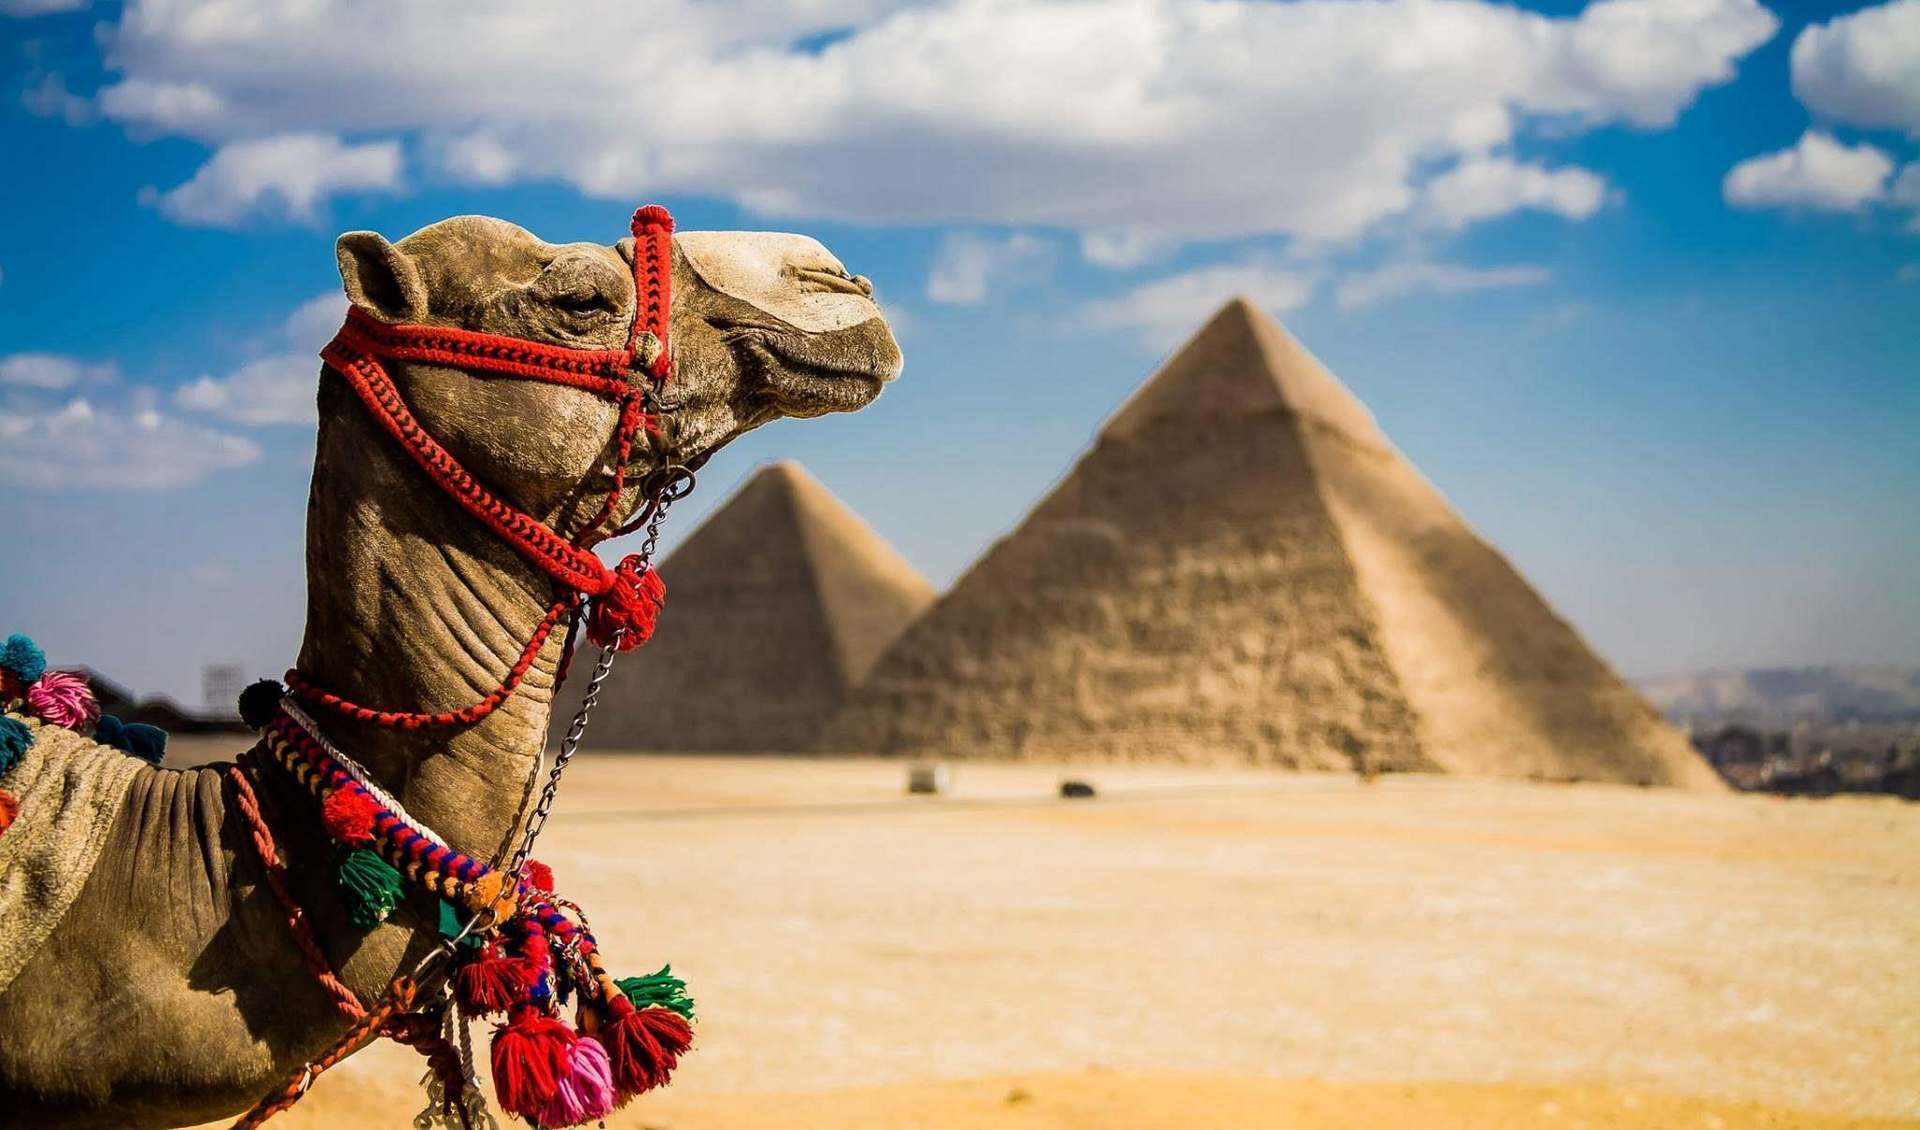 Самостоятельный отдых в Египте выйдет намного дороже, чем пакетный тур